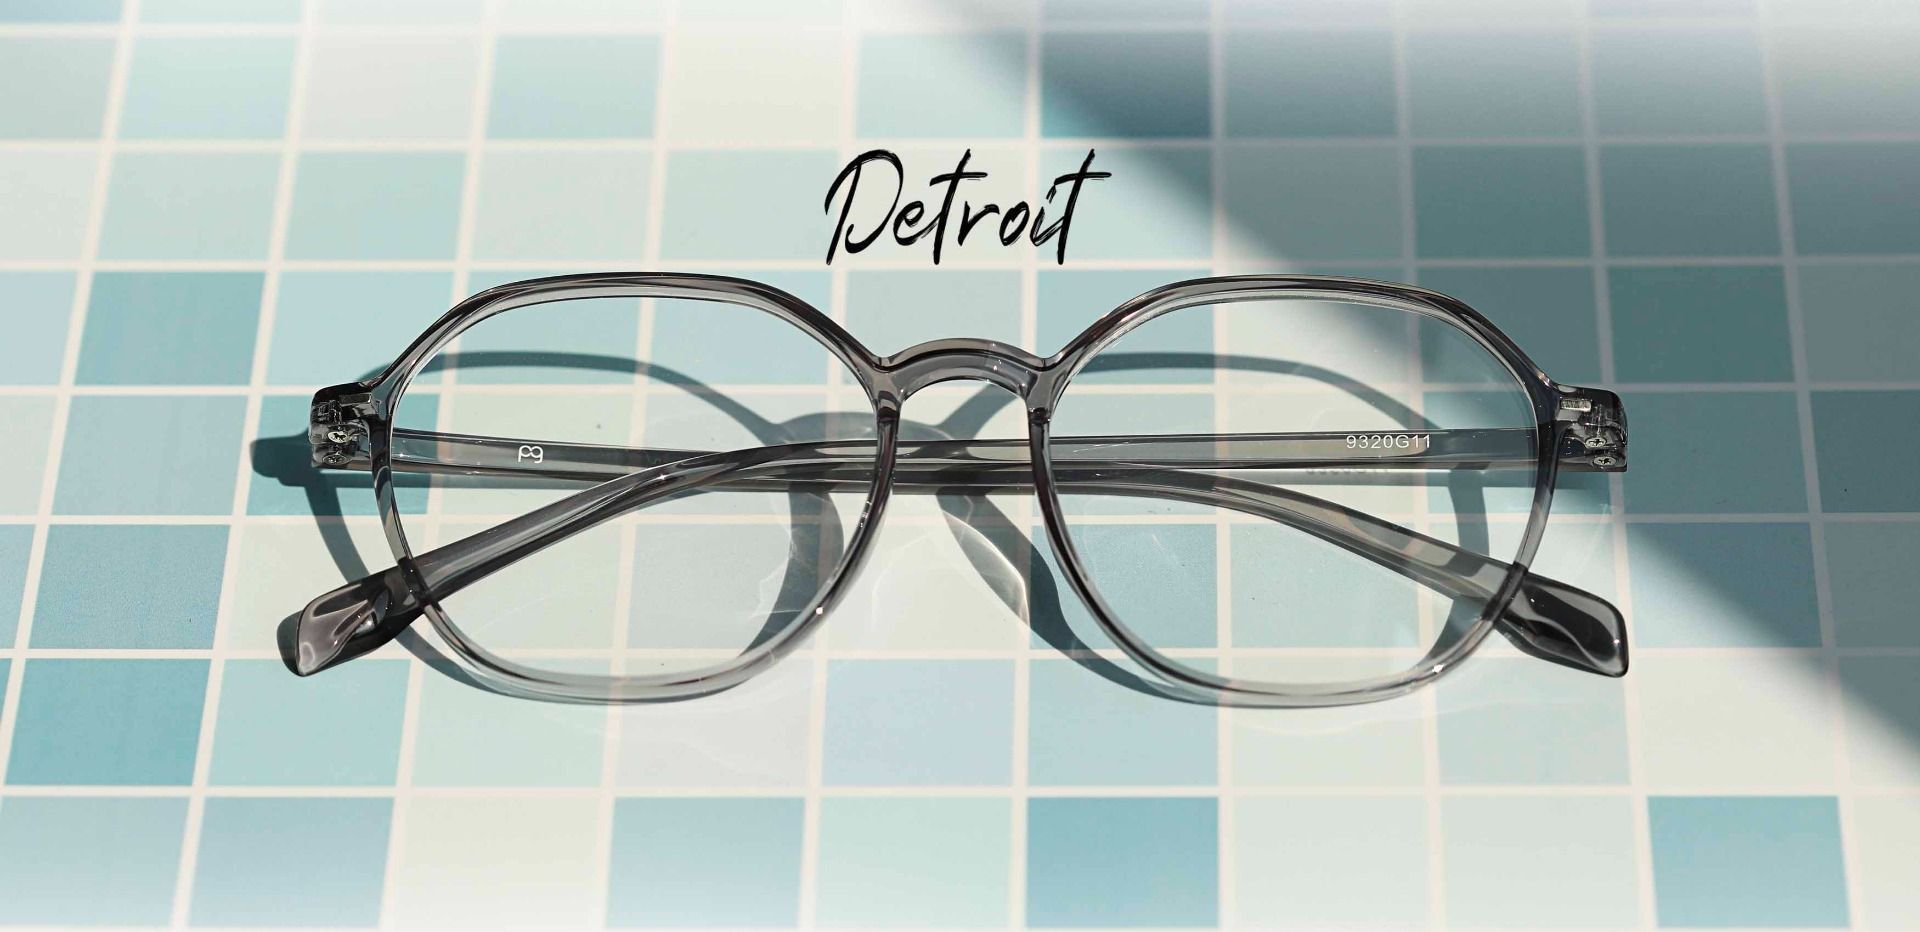 Detroit Geometric Progressive Glasses - Gray